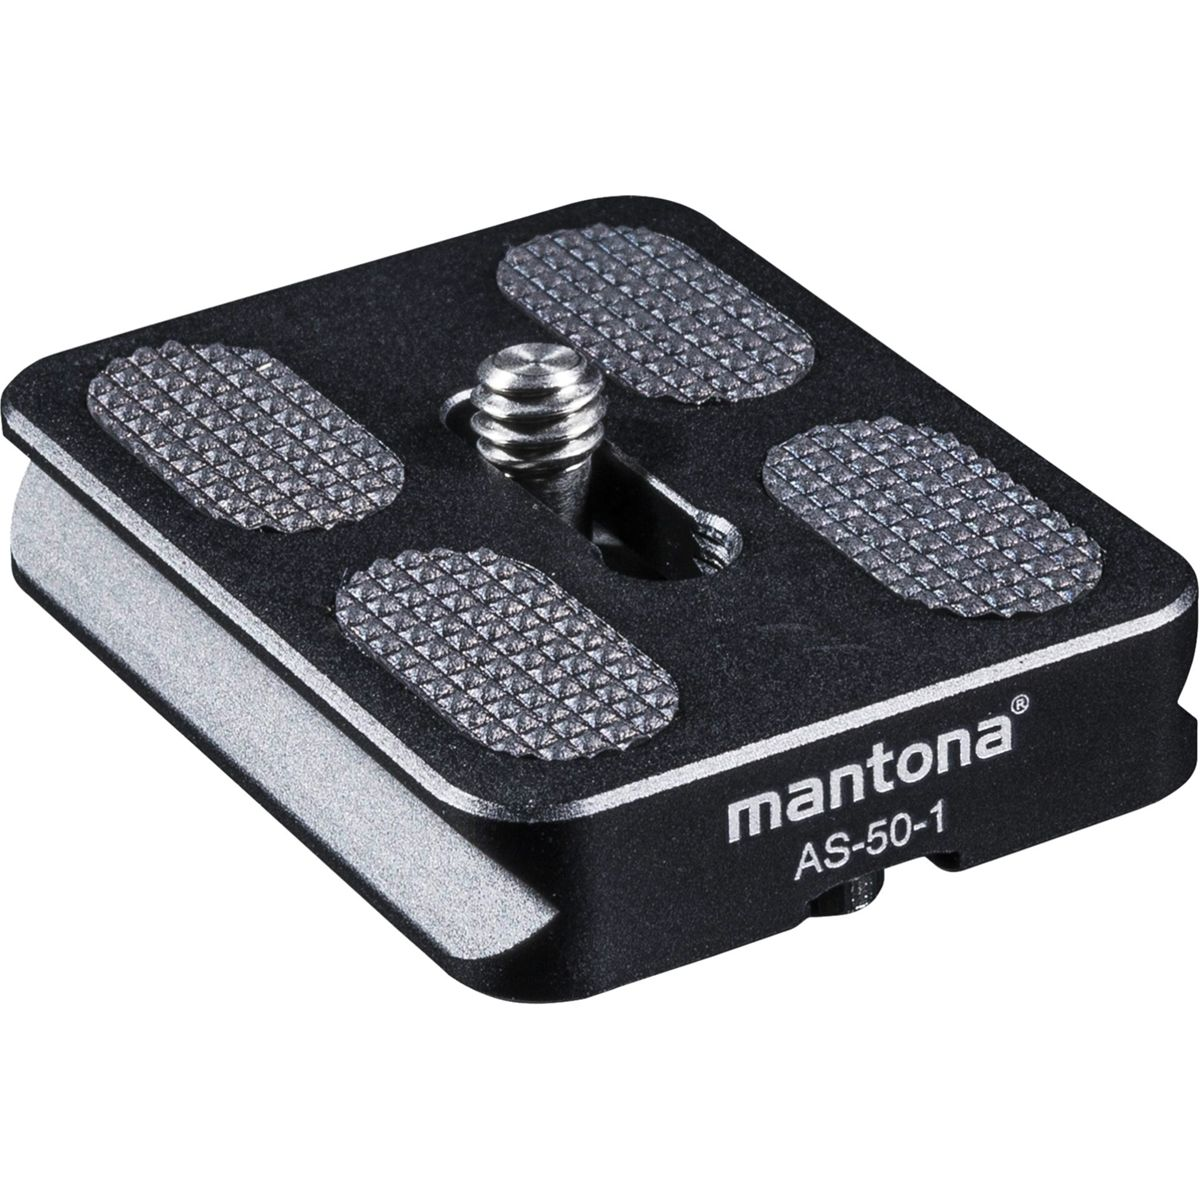 MANTONA AS-50-1 Schnellwechselplatte Schnellwechselplatte, schwarz 10 mm / bis Höhe silber, offen